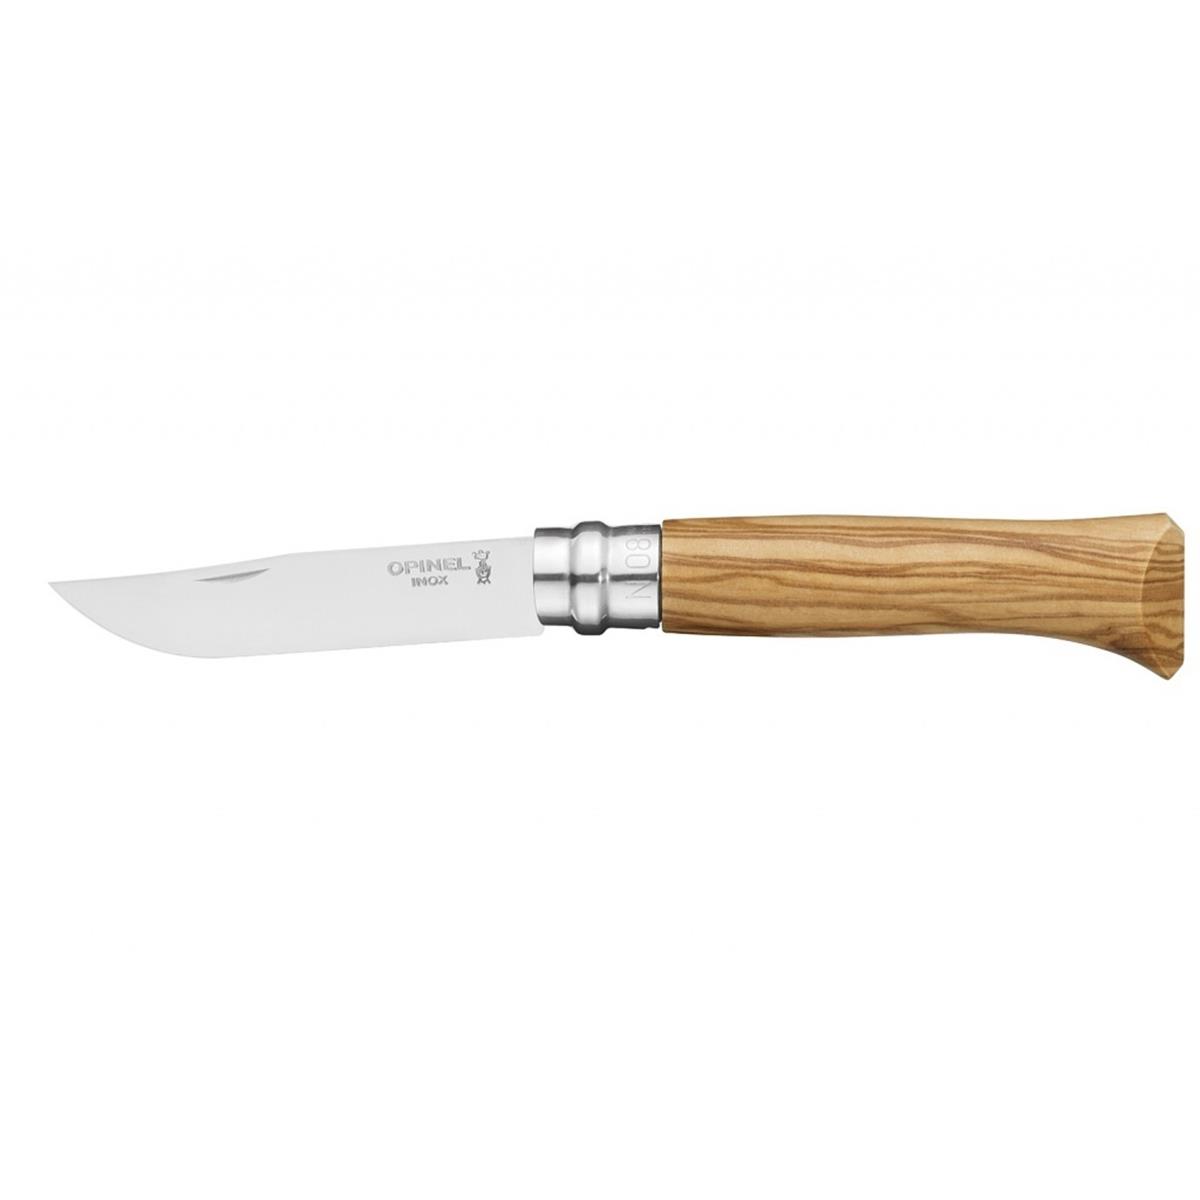 Нож филейный №8 VRI Folding Slim Olivewood нерж.сталь, длина клинка 8см (0011443) OPINEL